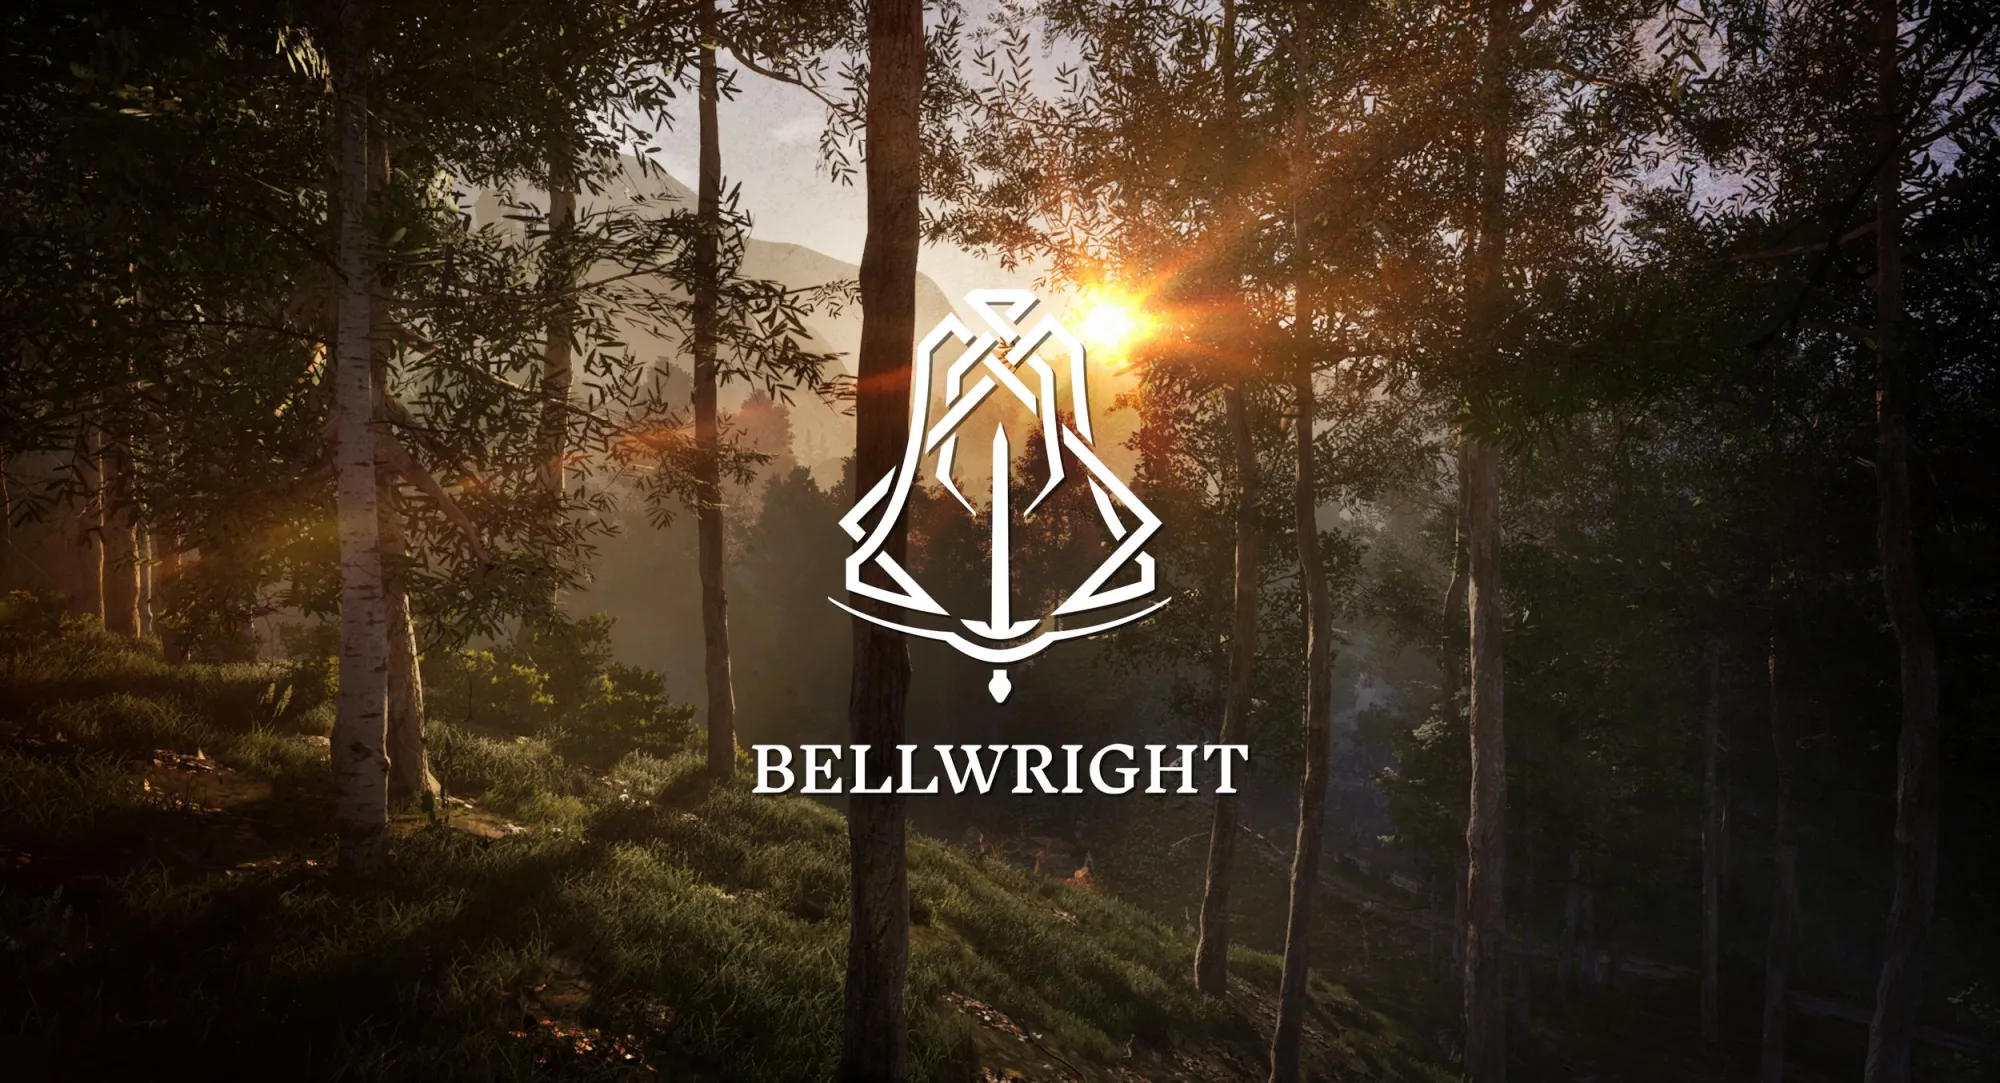 Bellwright le nouveau RPG arrive en accès anticipé sur Steam